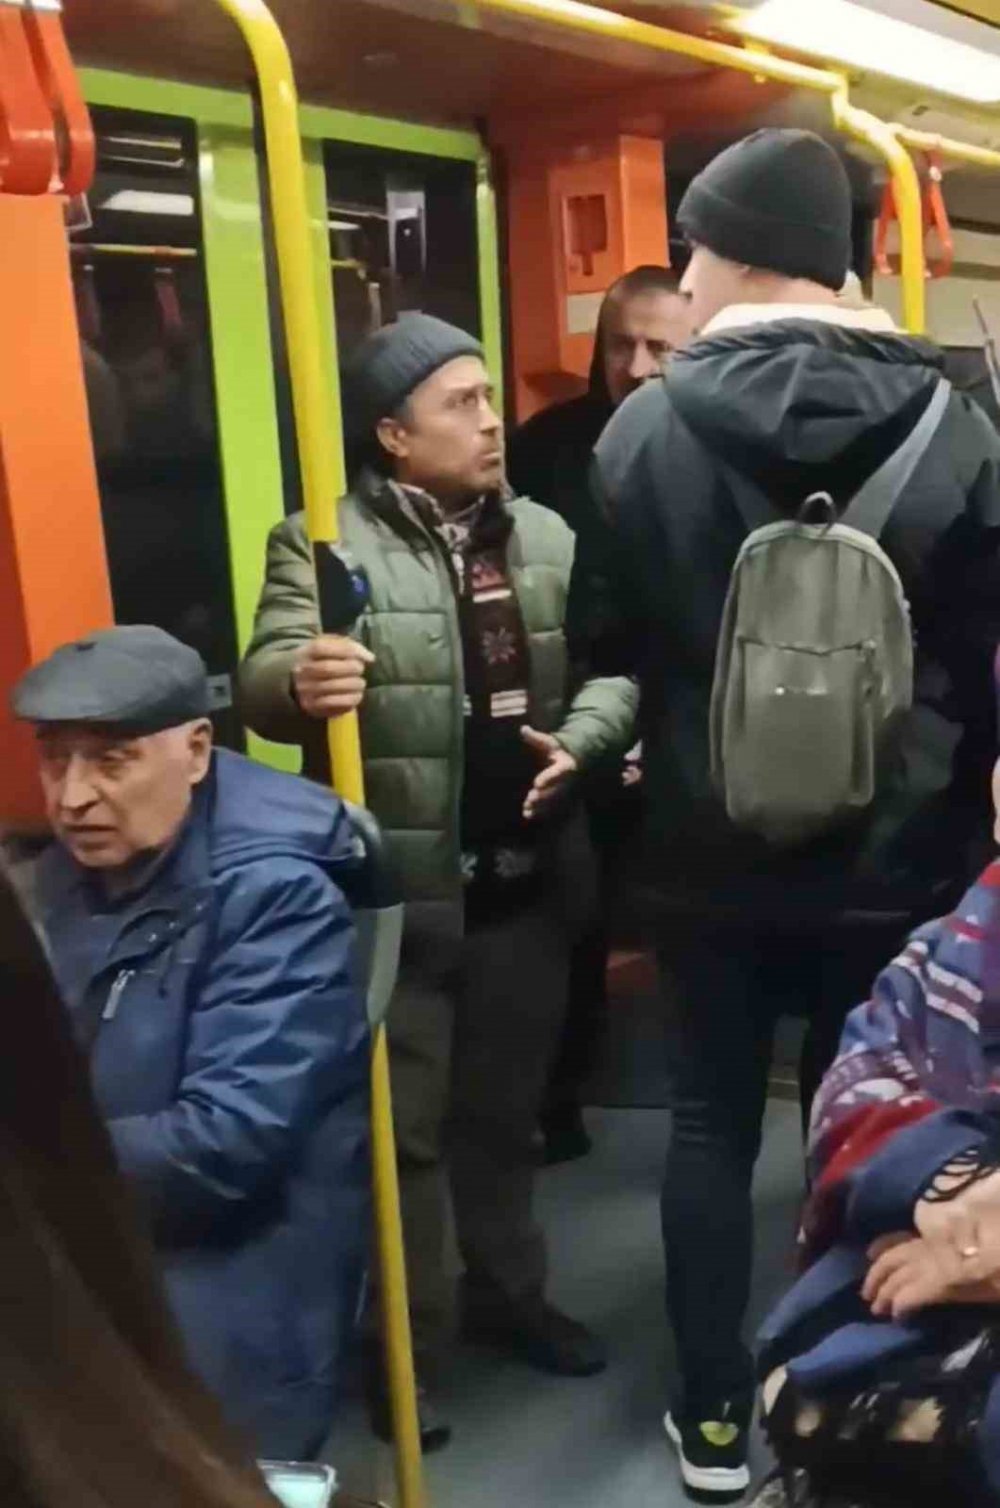 Metroda Müzik Çalarak Para Toplayan Gençler İle Vatandaşlar Arasında Tartışma Çıktı